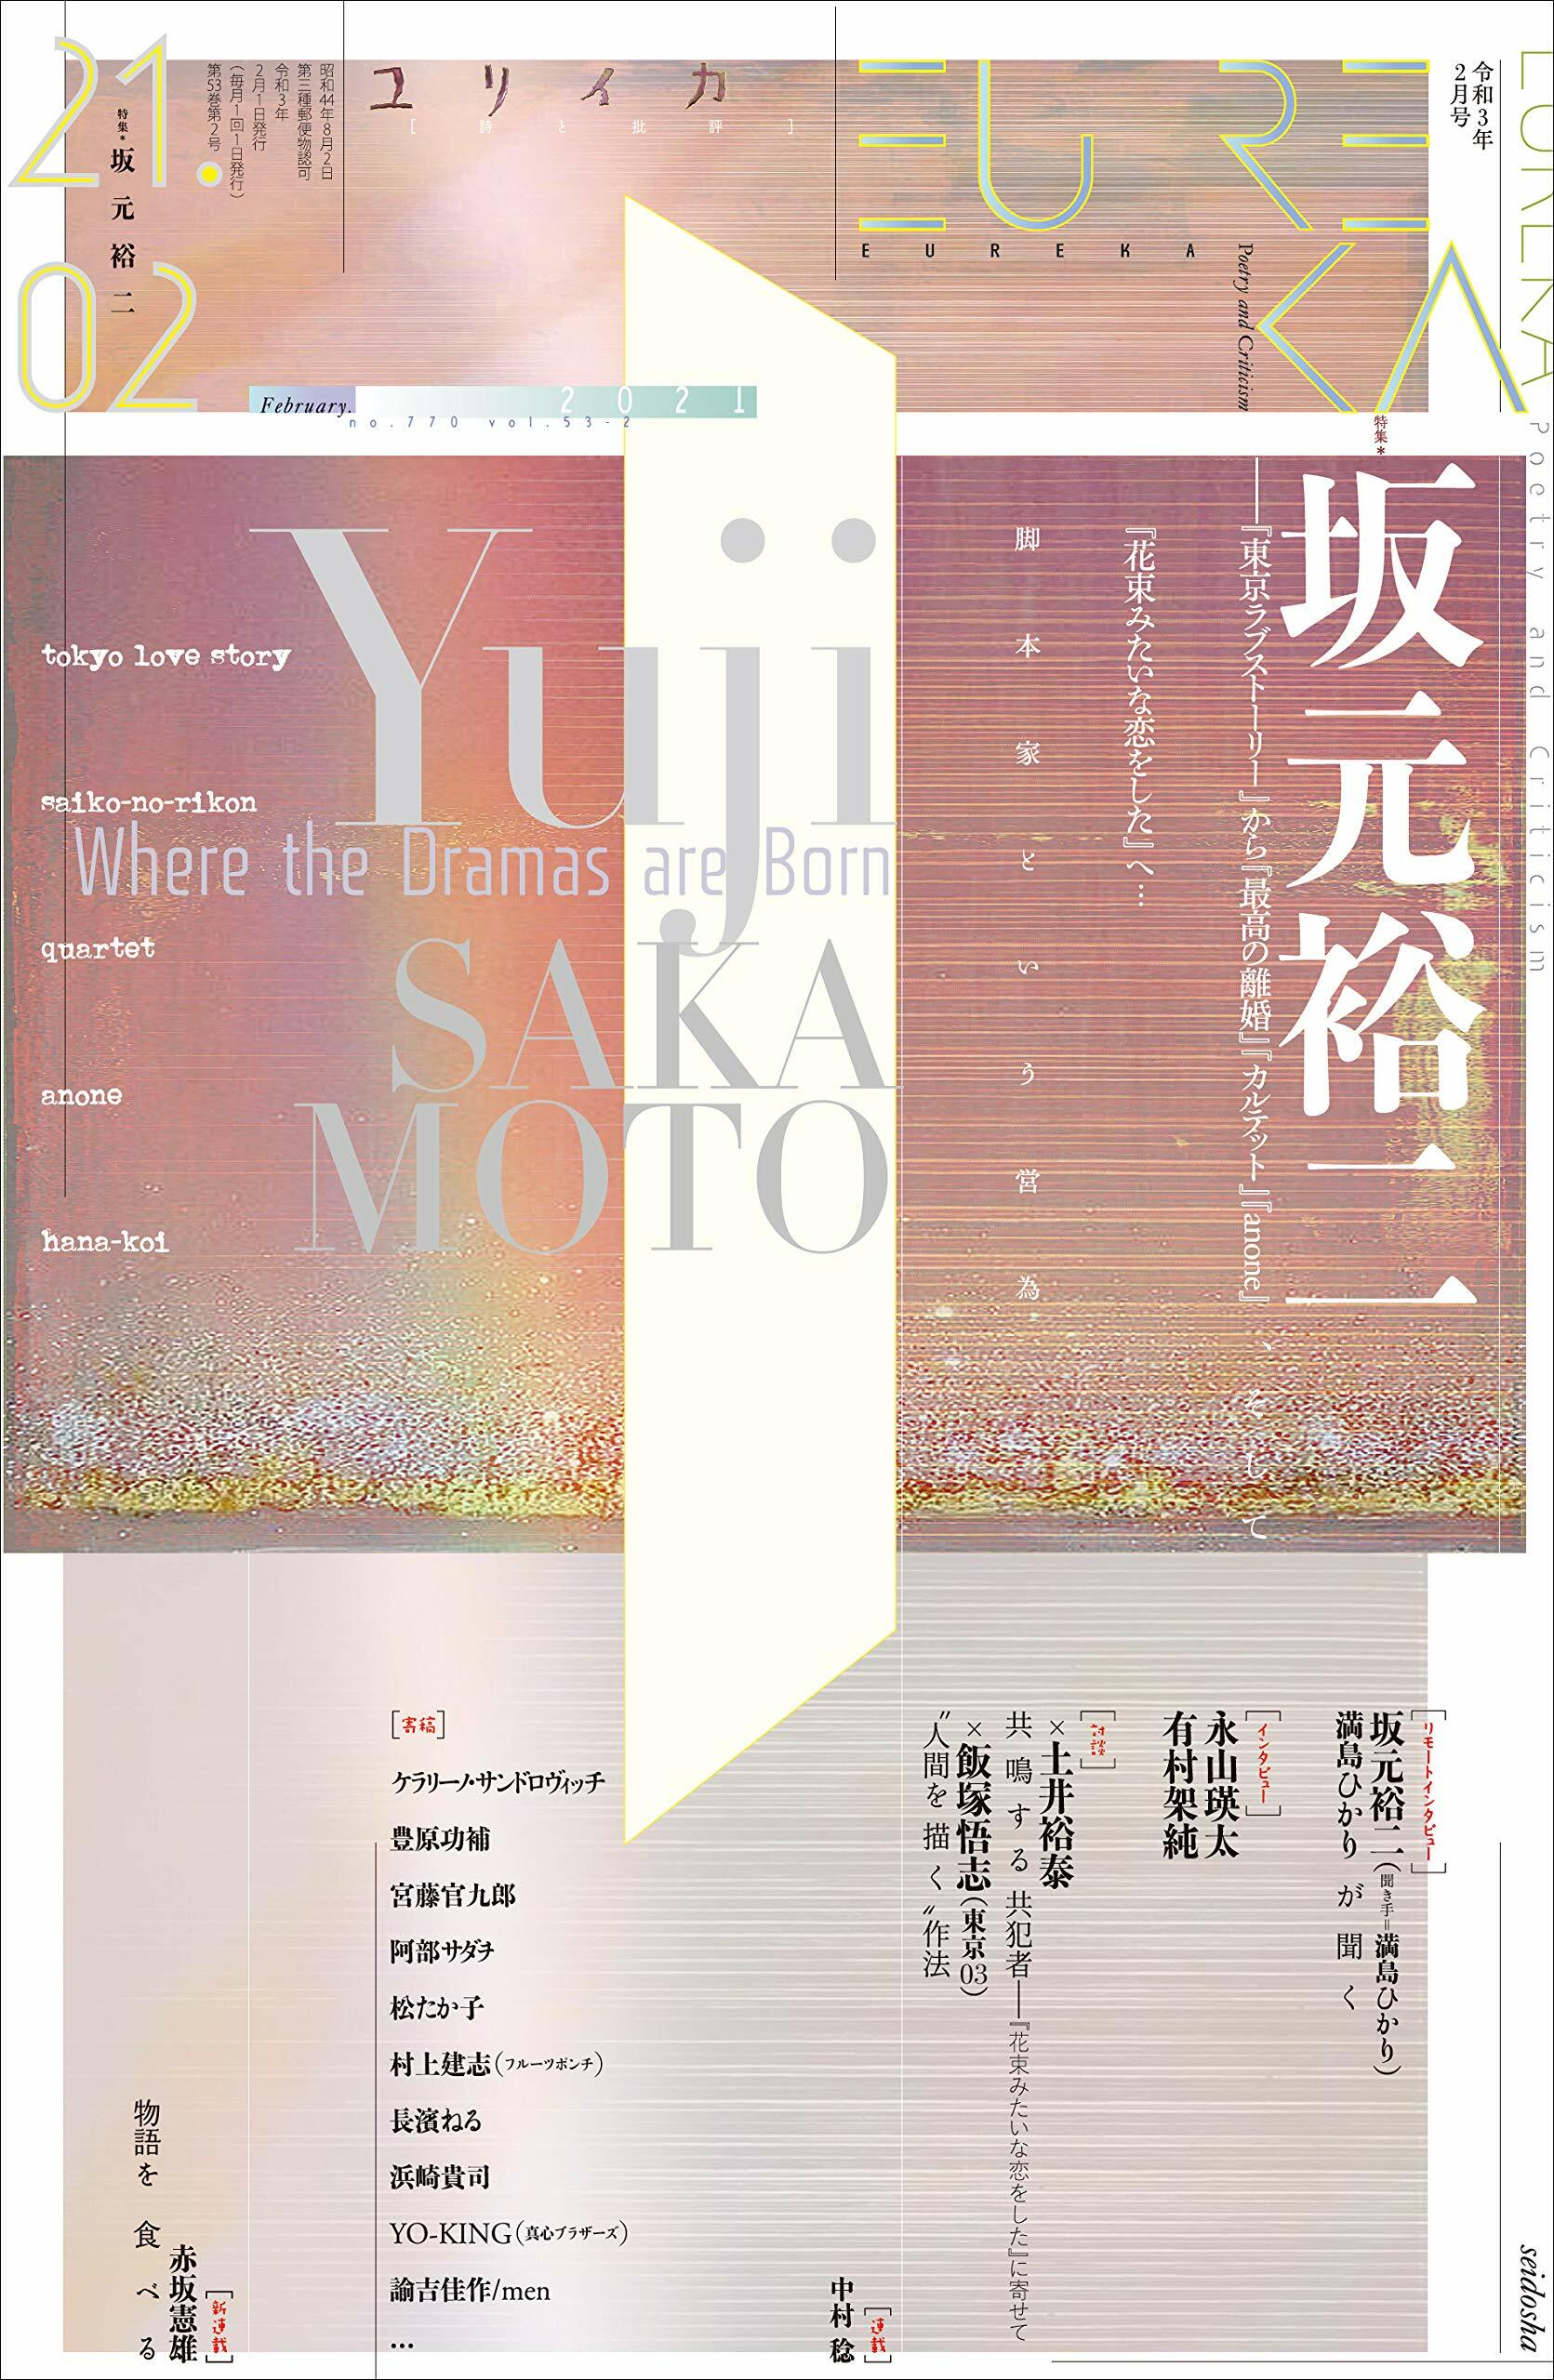 ユリイカ 2021年2月號 特集=坂元裕二 -『東京ラブスト-リ-』から『最高の離婚』『カルテット』『anone』、そして『花束みたいな戀をした』へ…脚本家という營爲-